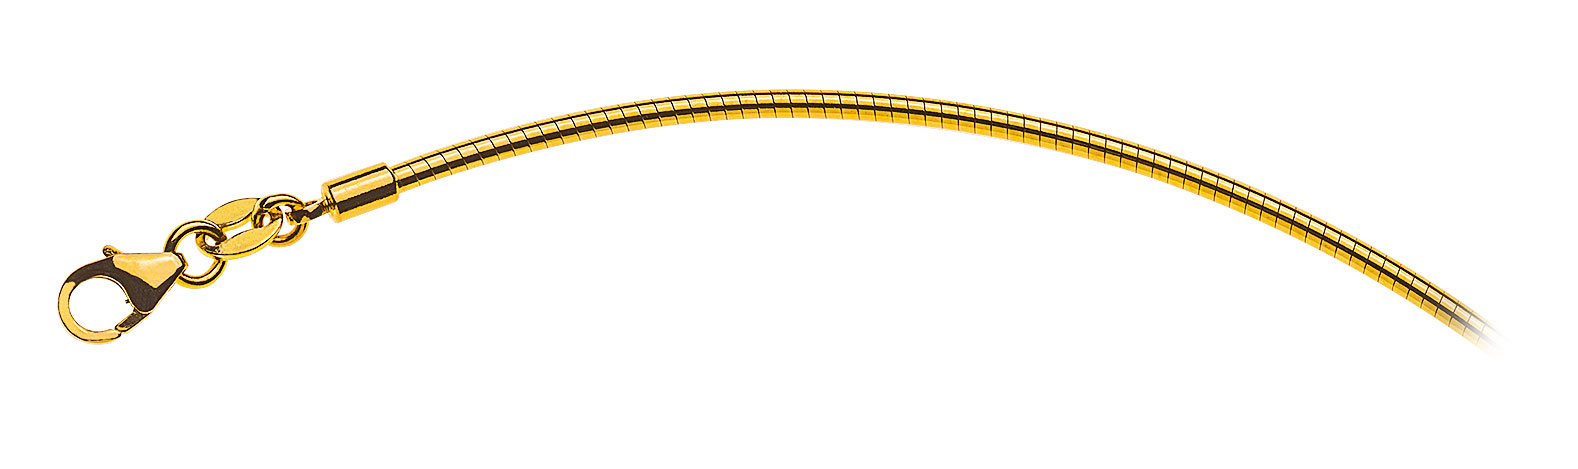 AURONOS Prestige Halskette Gelbgold 18K Omegakette 45cm 1.8mm